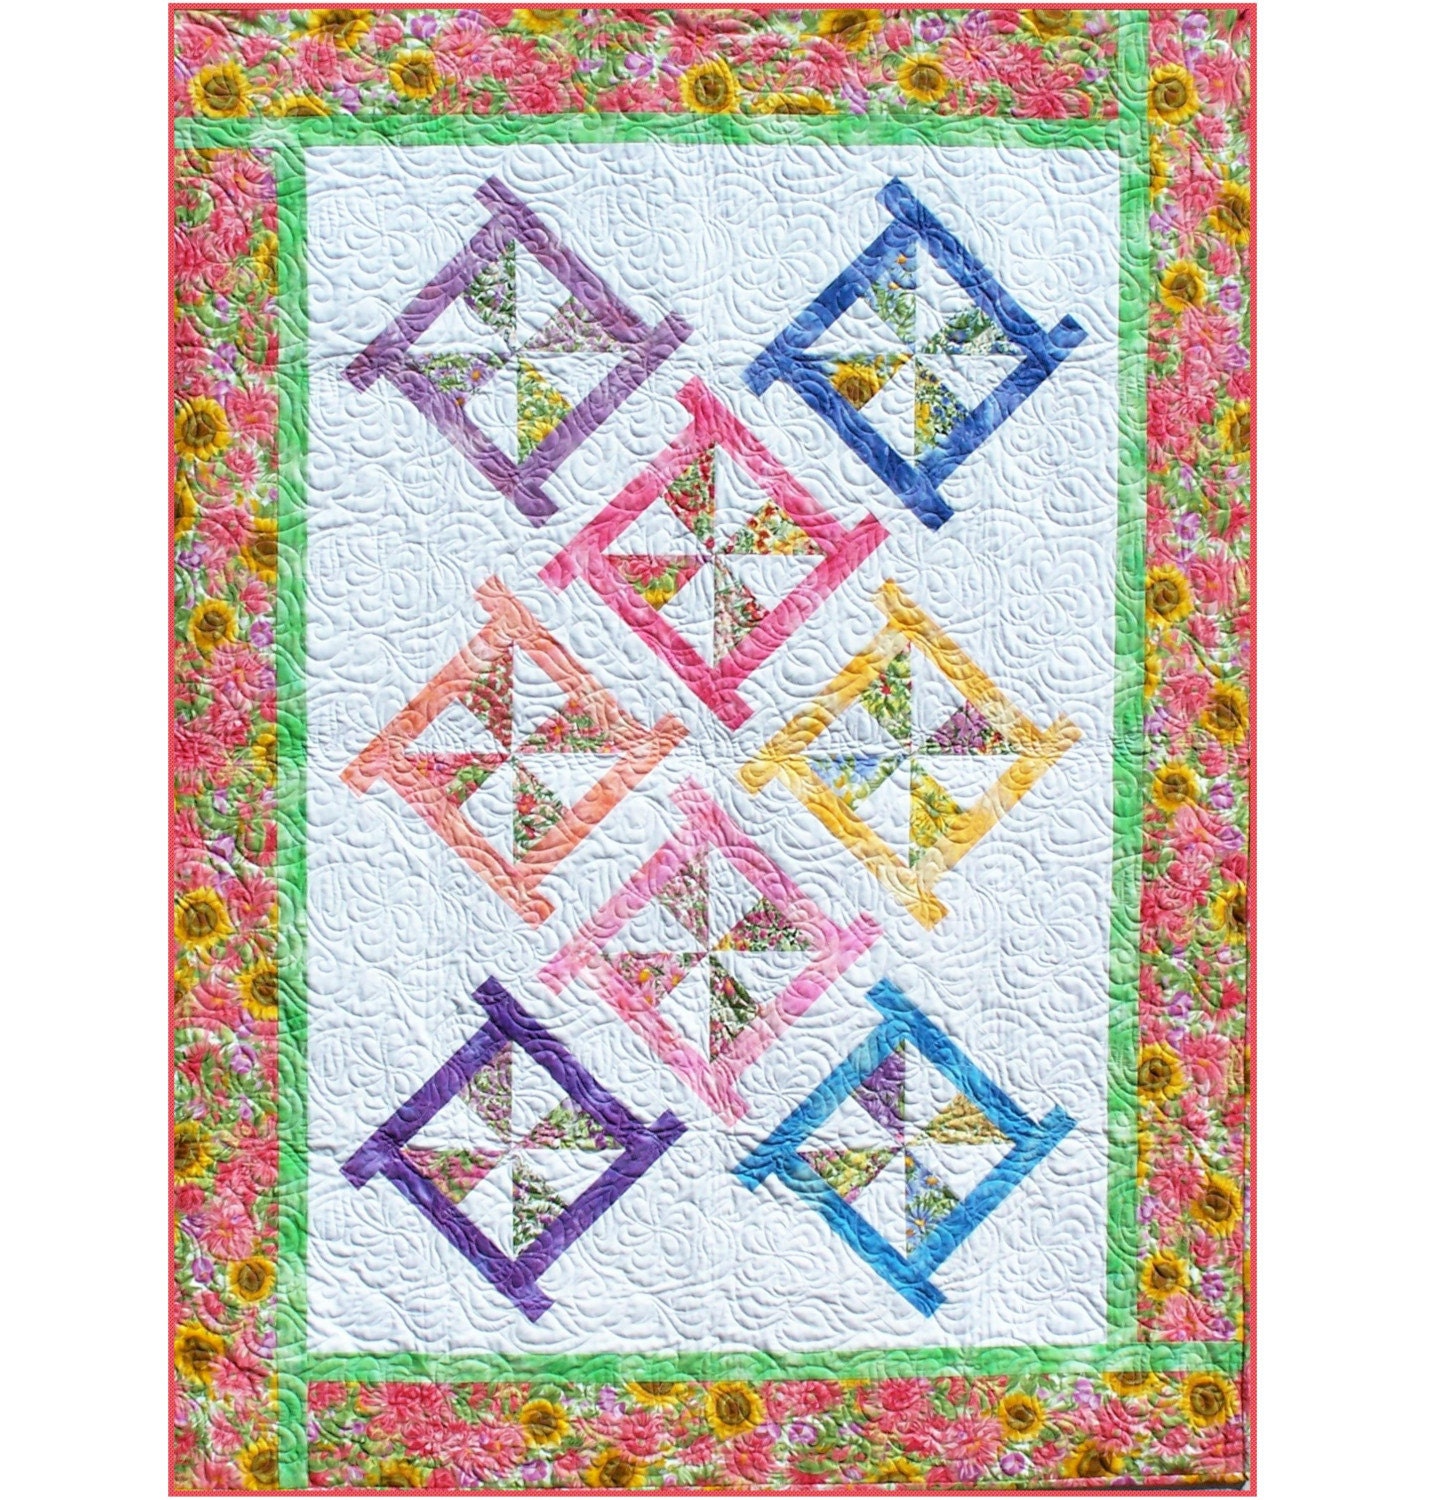 pinwheel quilt pattern free patterns gallery